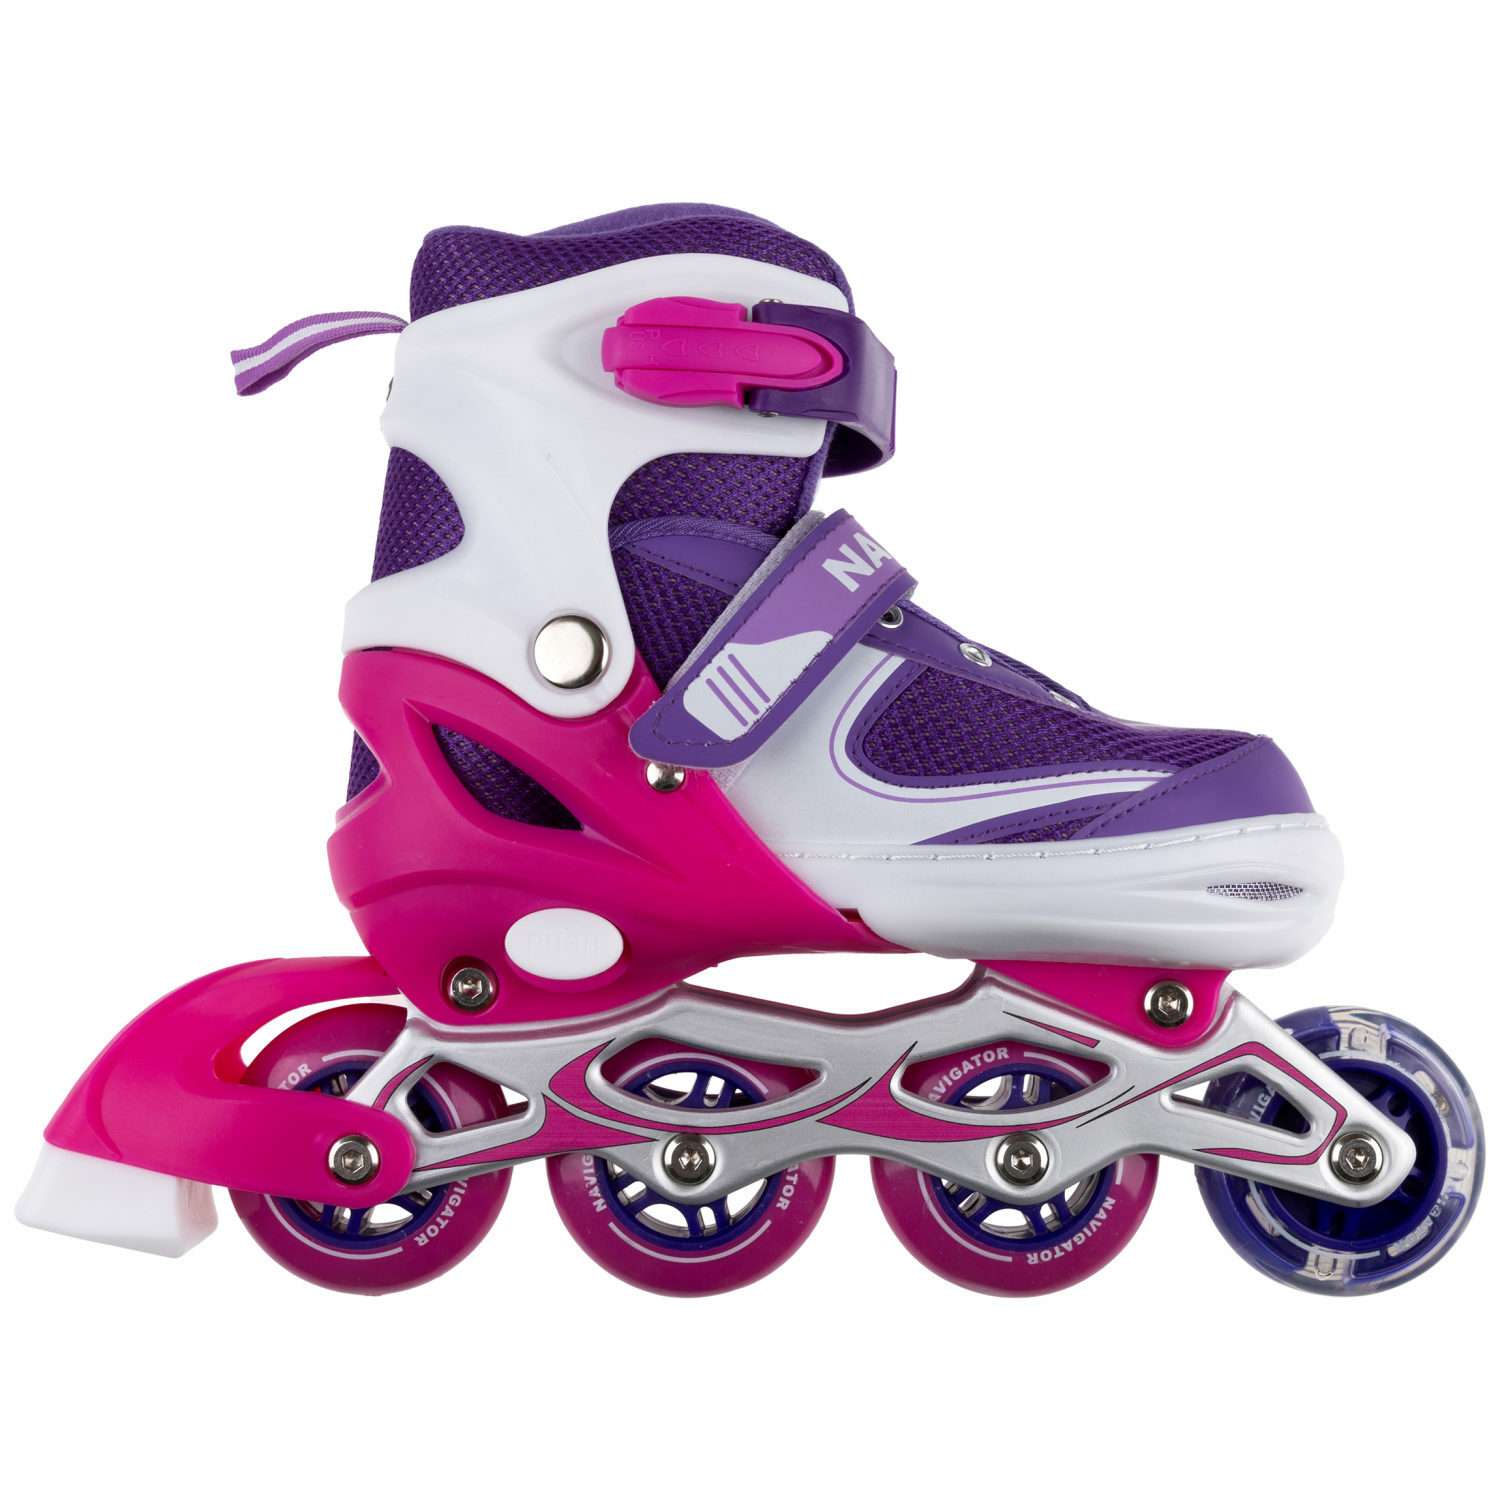 Ролики Navigator детские раздвижные 30 - 33 размер с защитой и шлемом розовый - фото 7